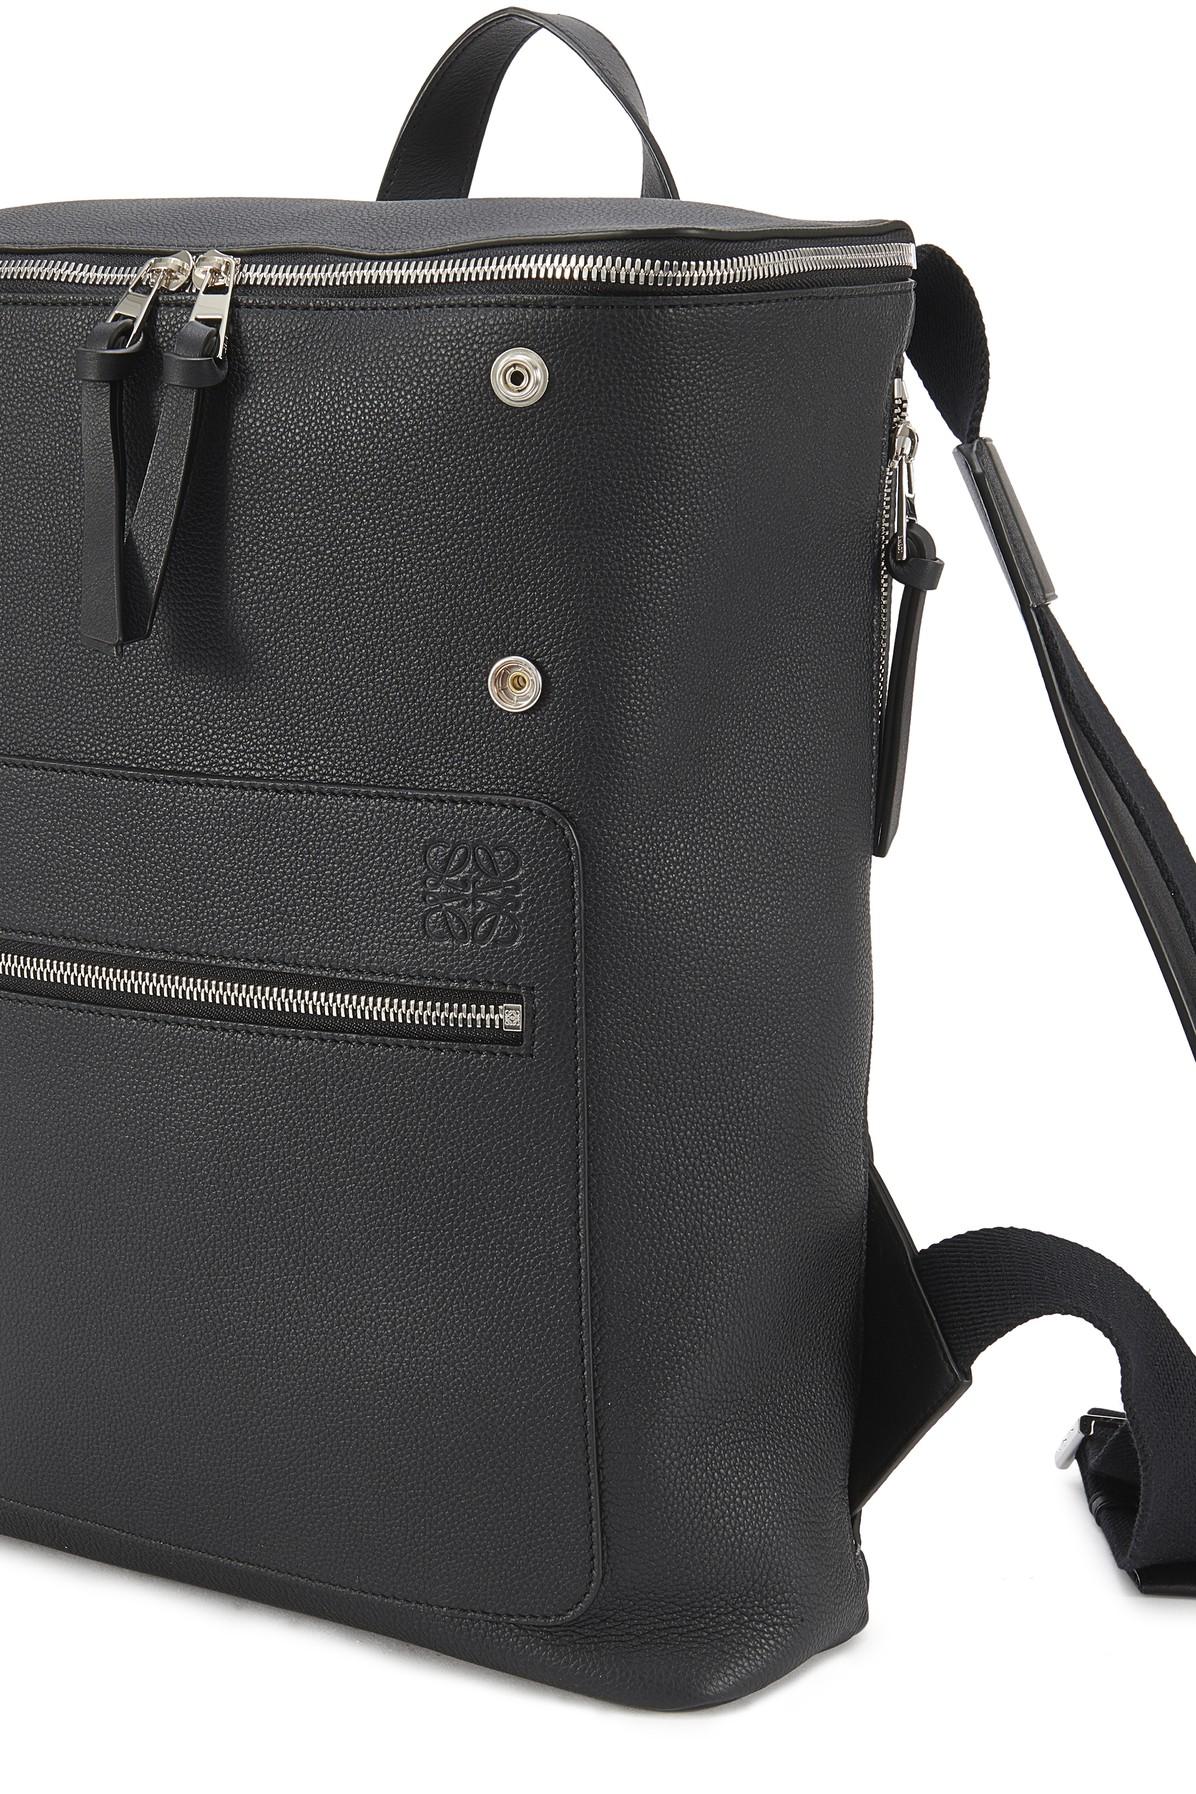 Loewe Goya Slim Backpack in Black for Men - Lyst